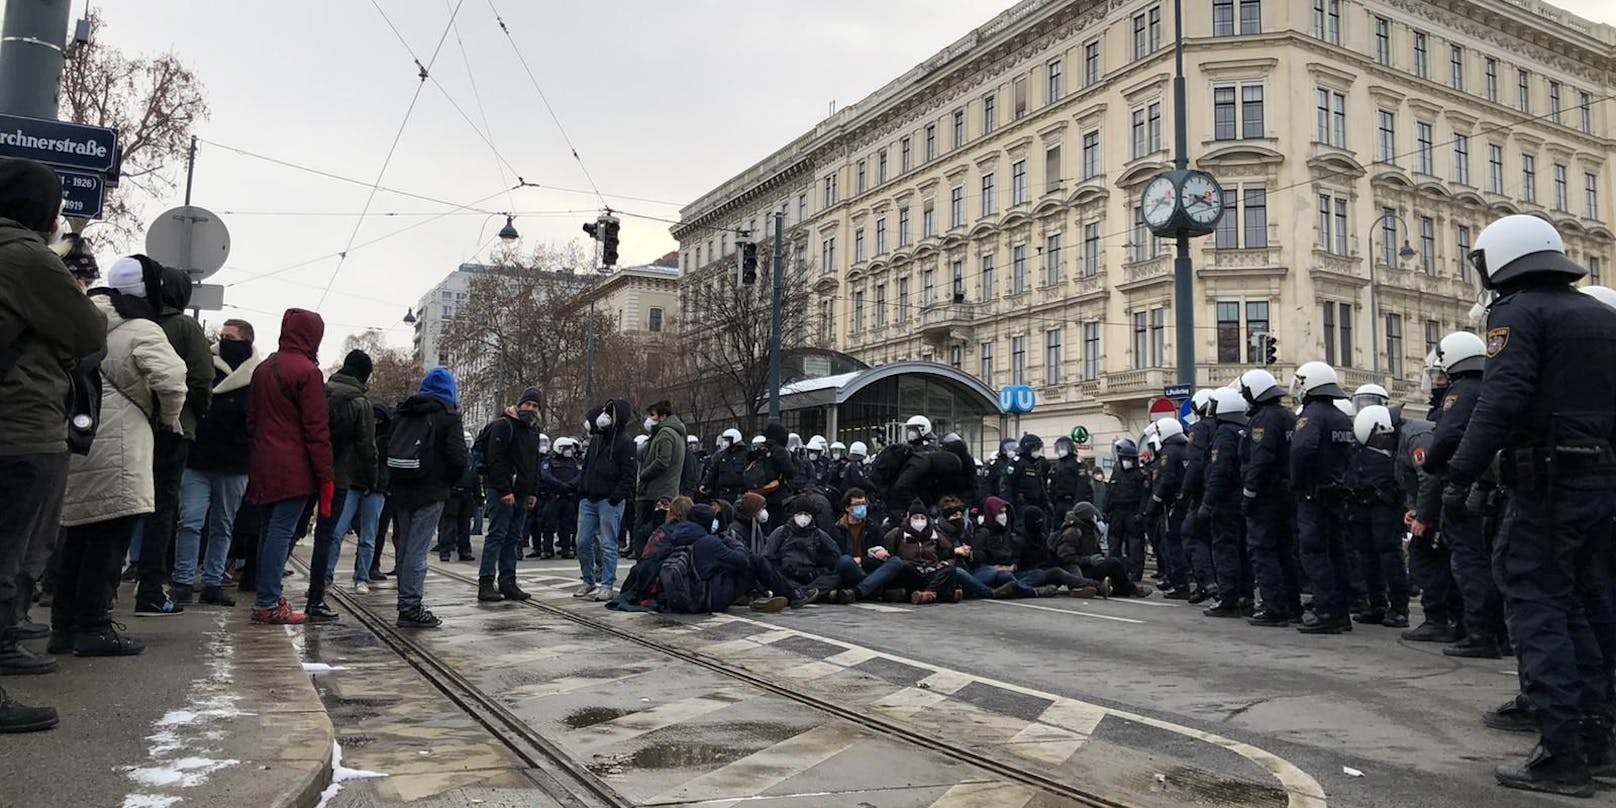 Am 16. Jänner waren Sitzblockaden das Mittel der Wahl. Hunderte Polizisten kesselten daraufhin die Gegendemonstranten mehrere Stunden.